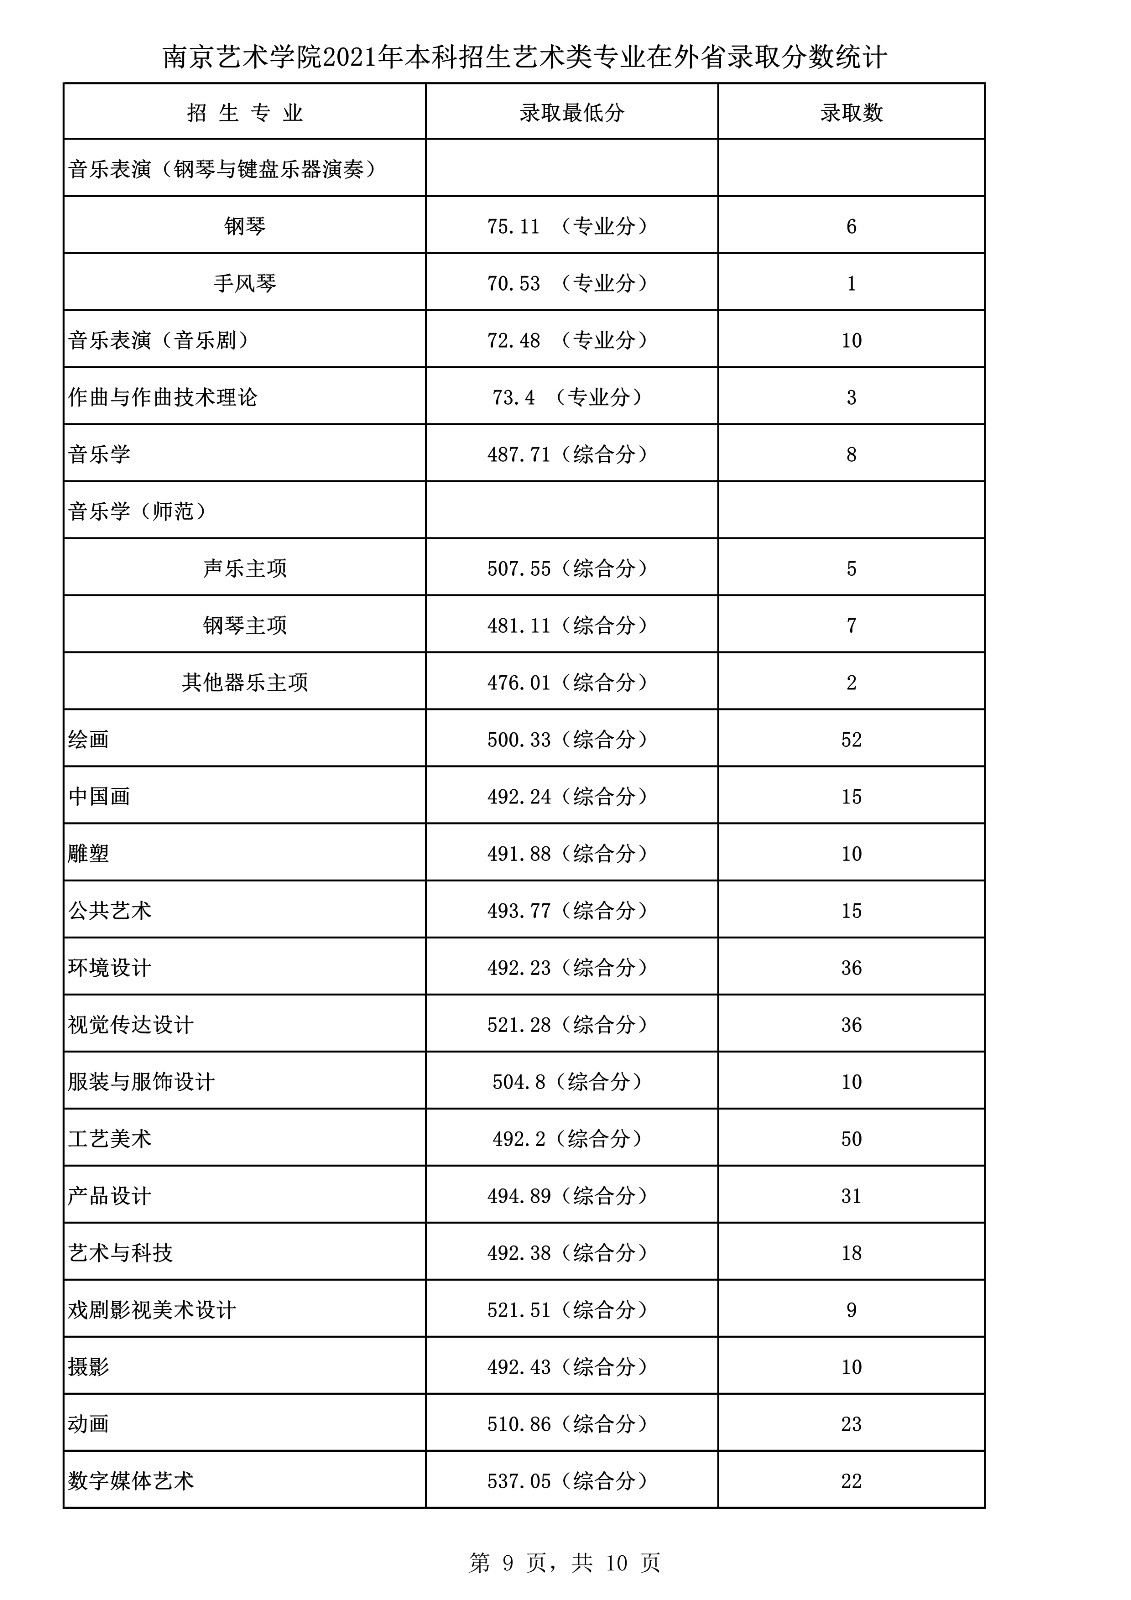 中国舞蹈艺术学院排名第五的南京艺术学院舞蹈专业录取最低分是多少 符合什么要求才能报考呢